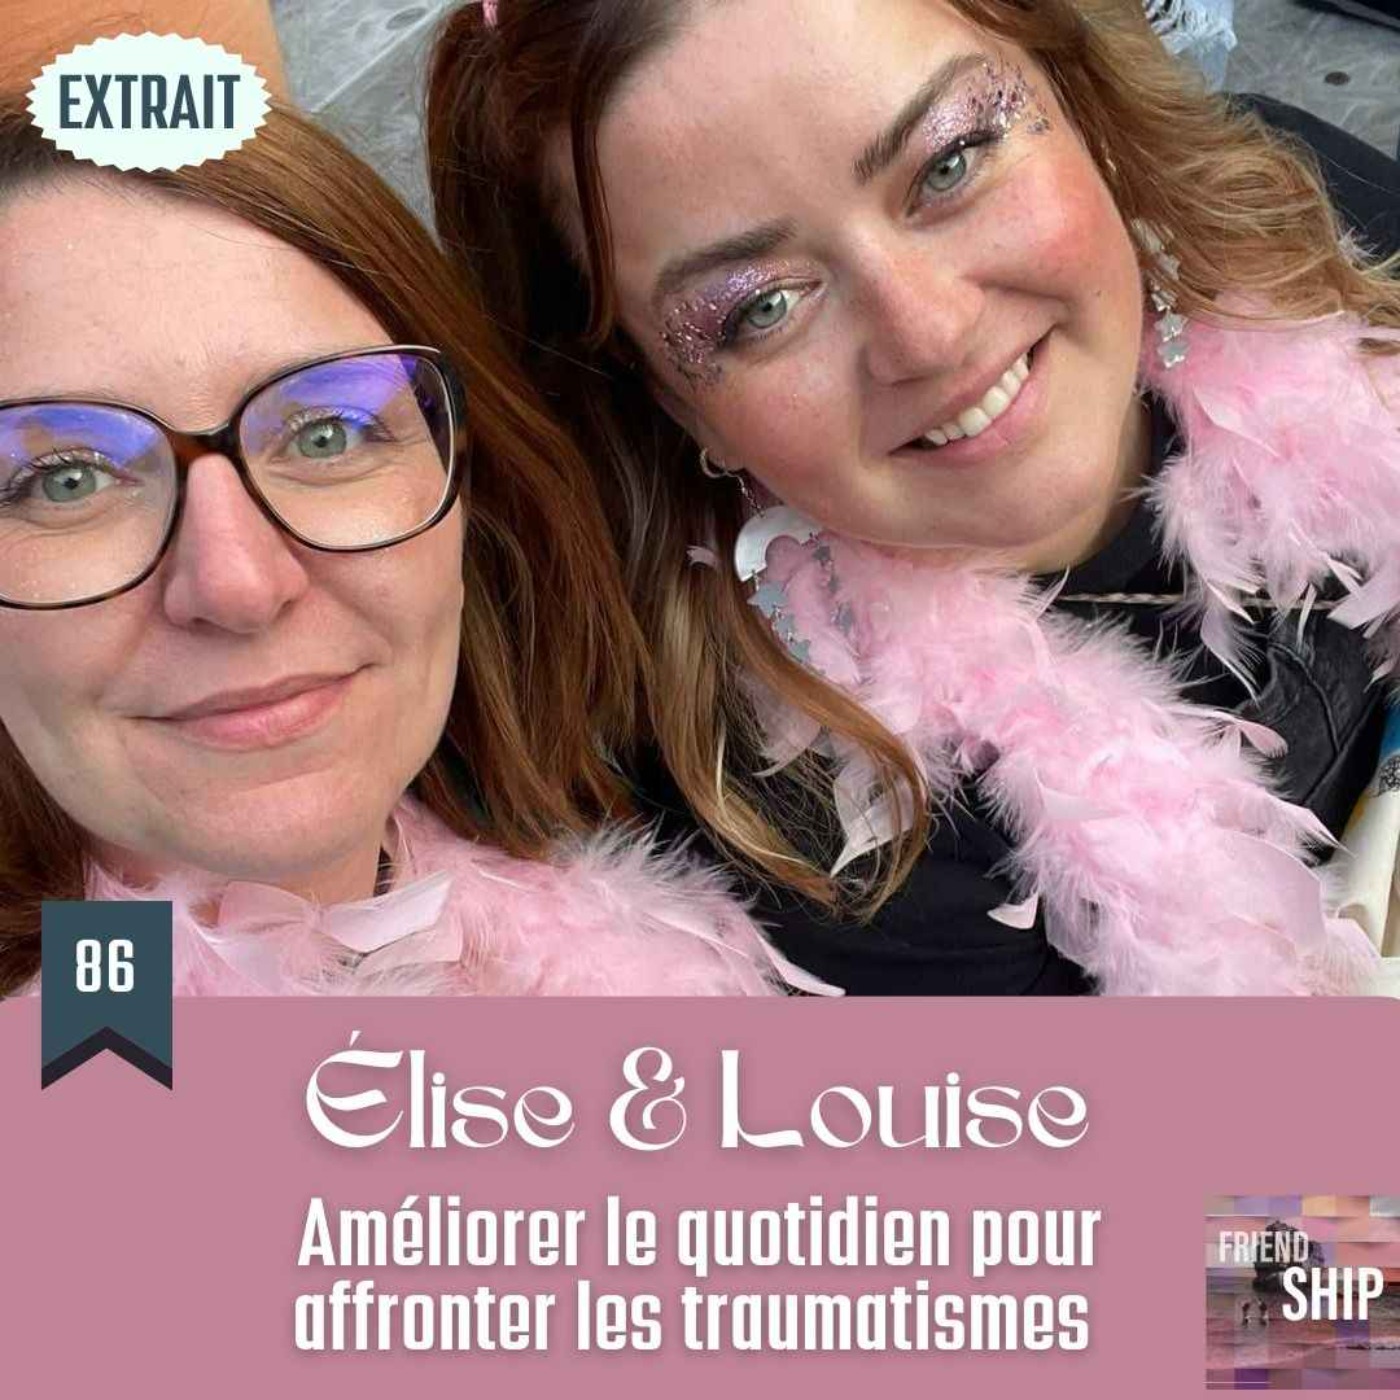 EXTRAIT / Élise & Louise : Améliorer le quotidien pour affronter les traumatismes